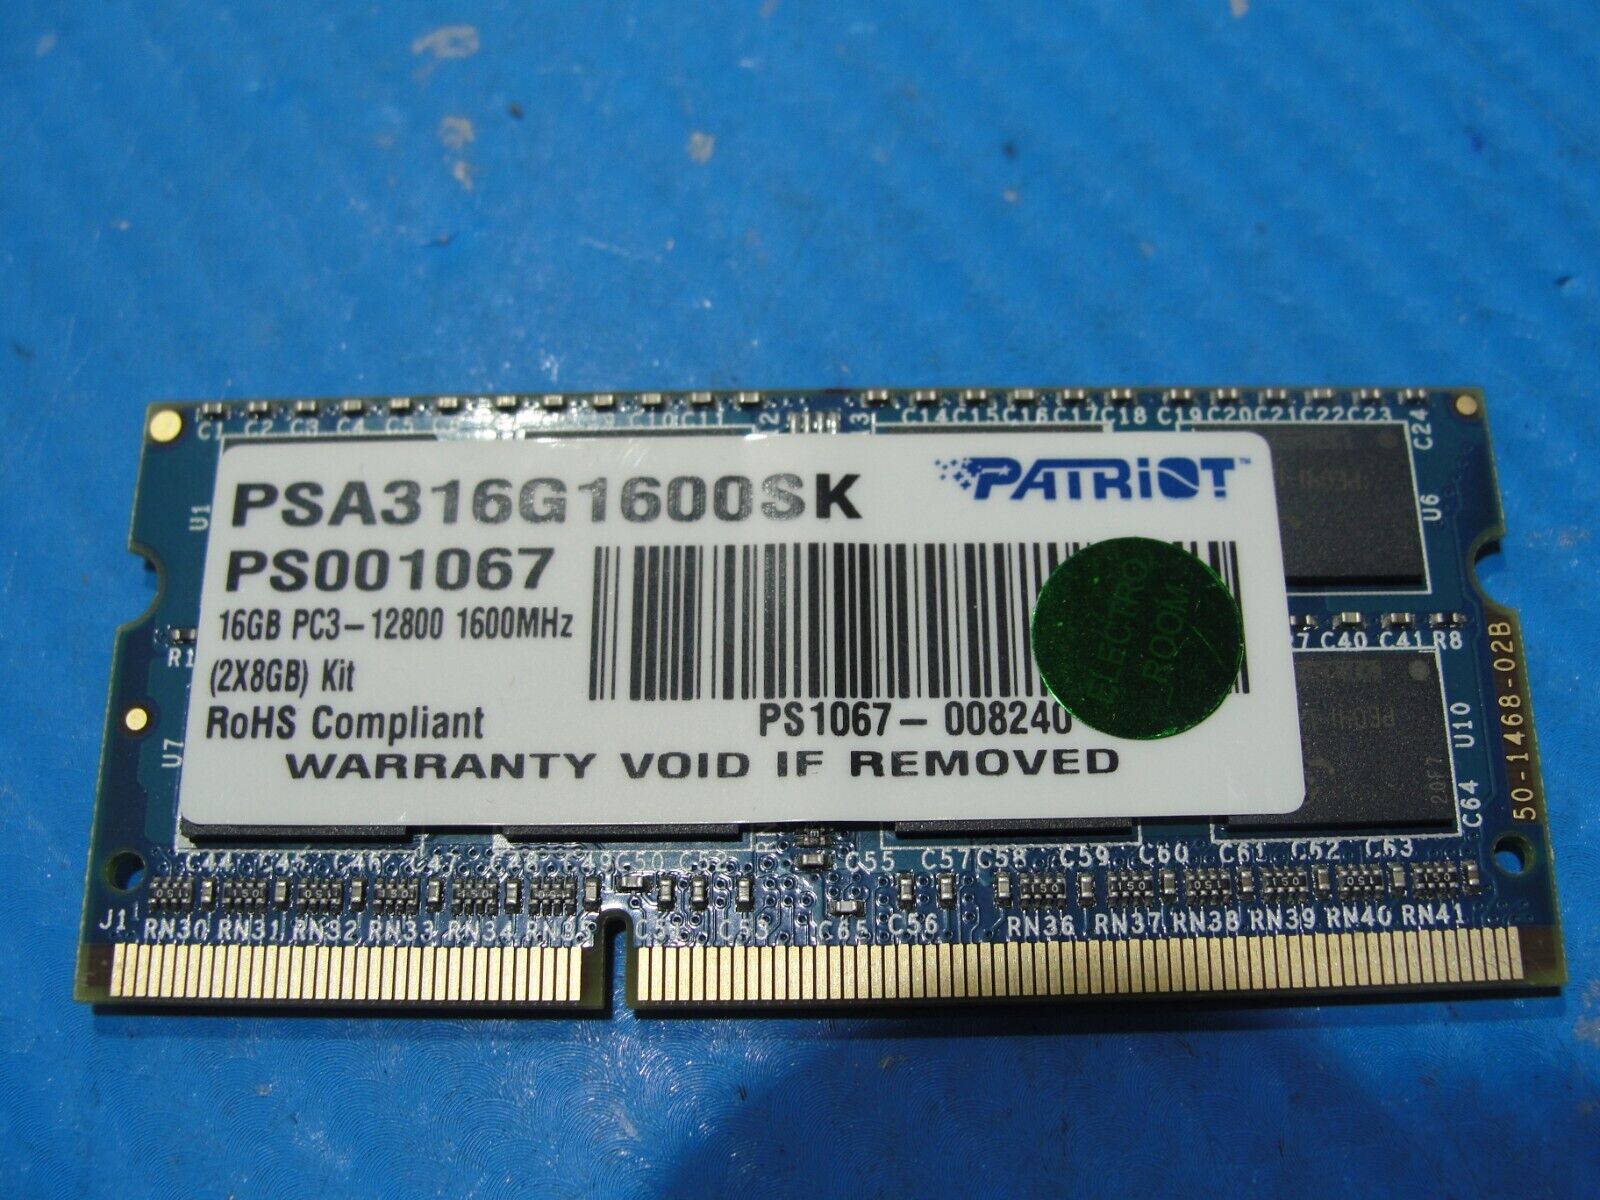 MSI GE70 2QE Patriot PS001067 PSA316G1600SK 16GB Memory RAM PC3-12800 1600MHz